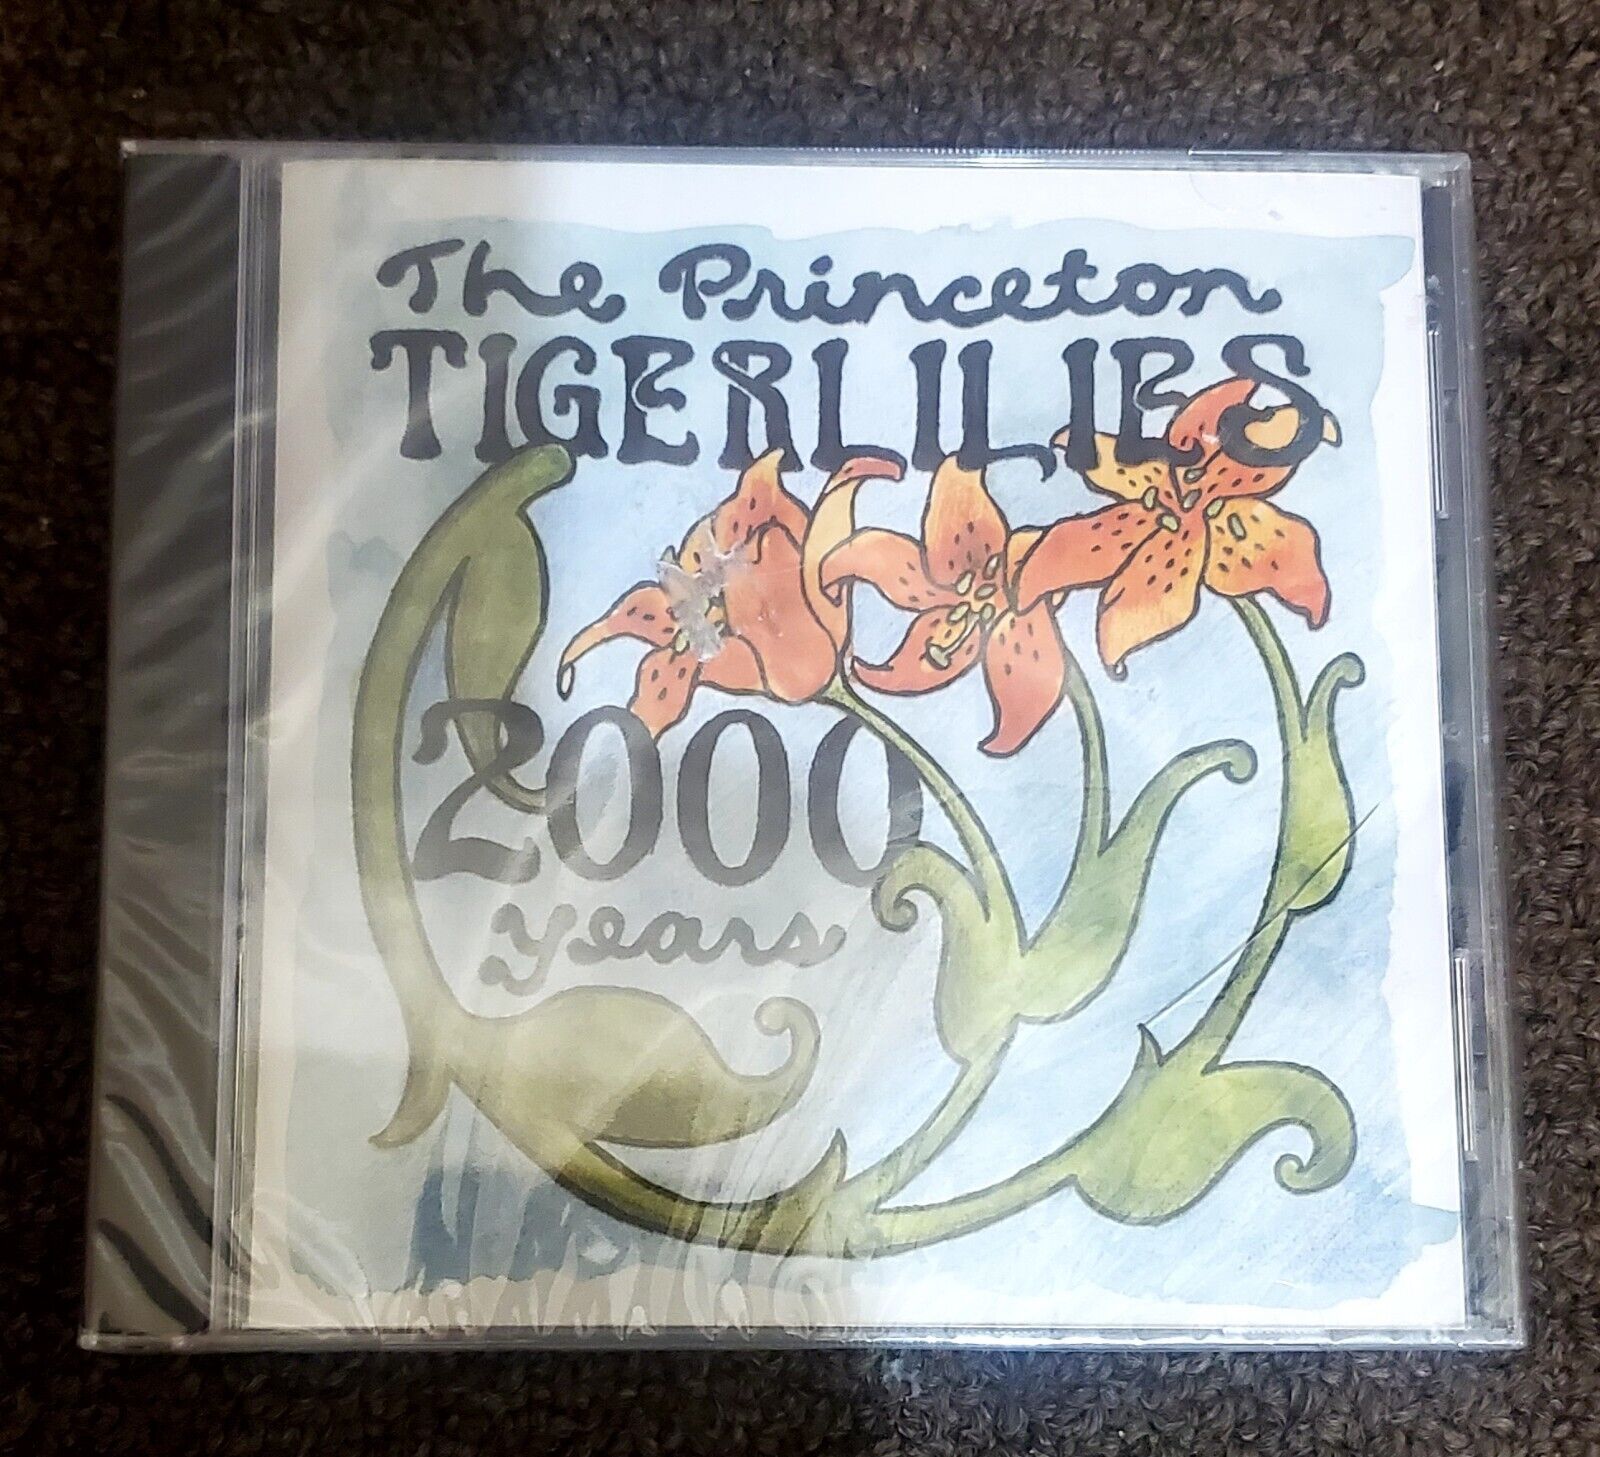 Princeton [University] Tigerlilies - 2000 Years - rare CD - sealed unopened 